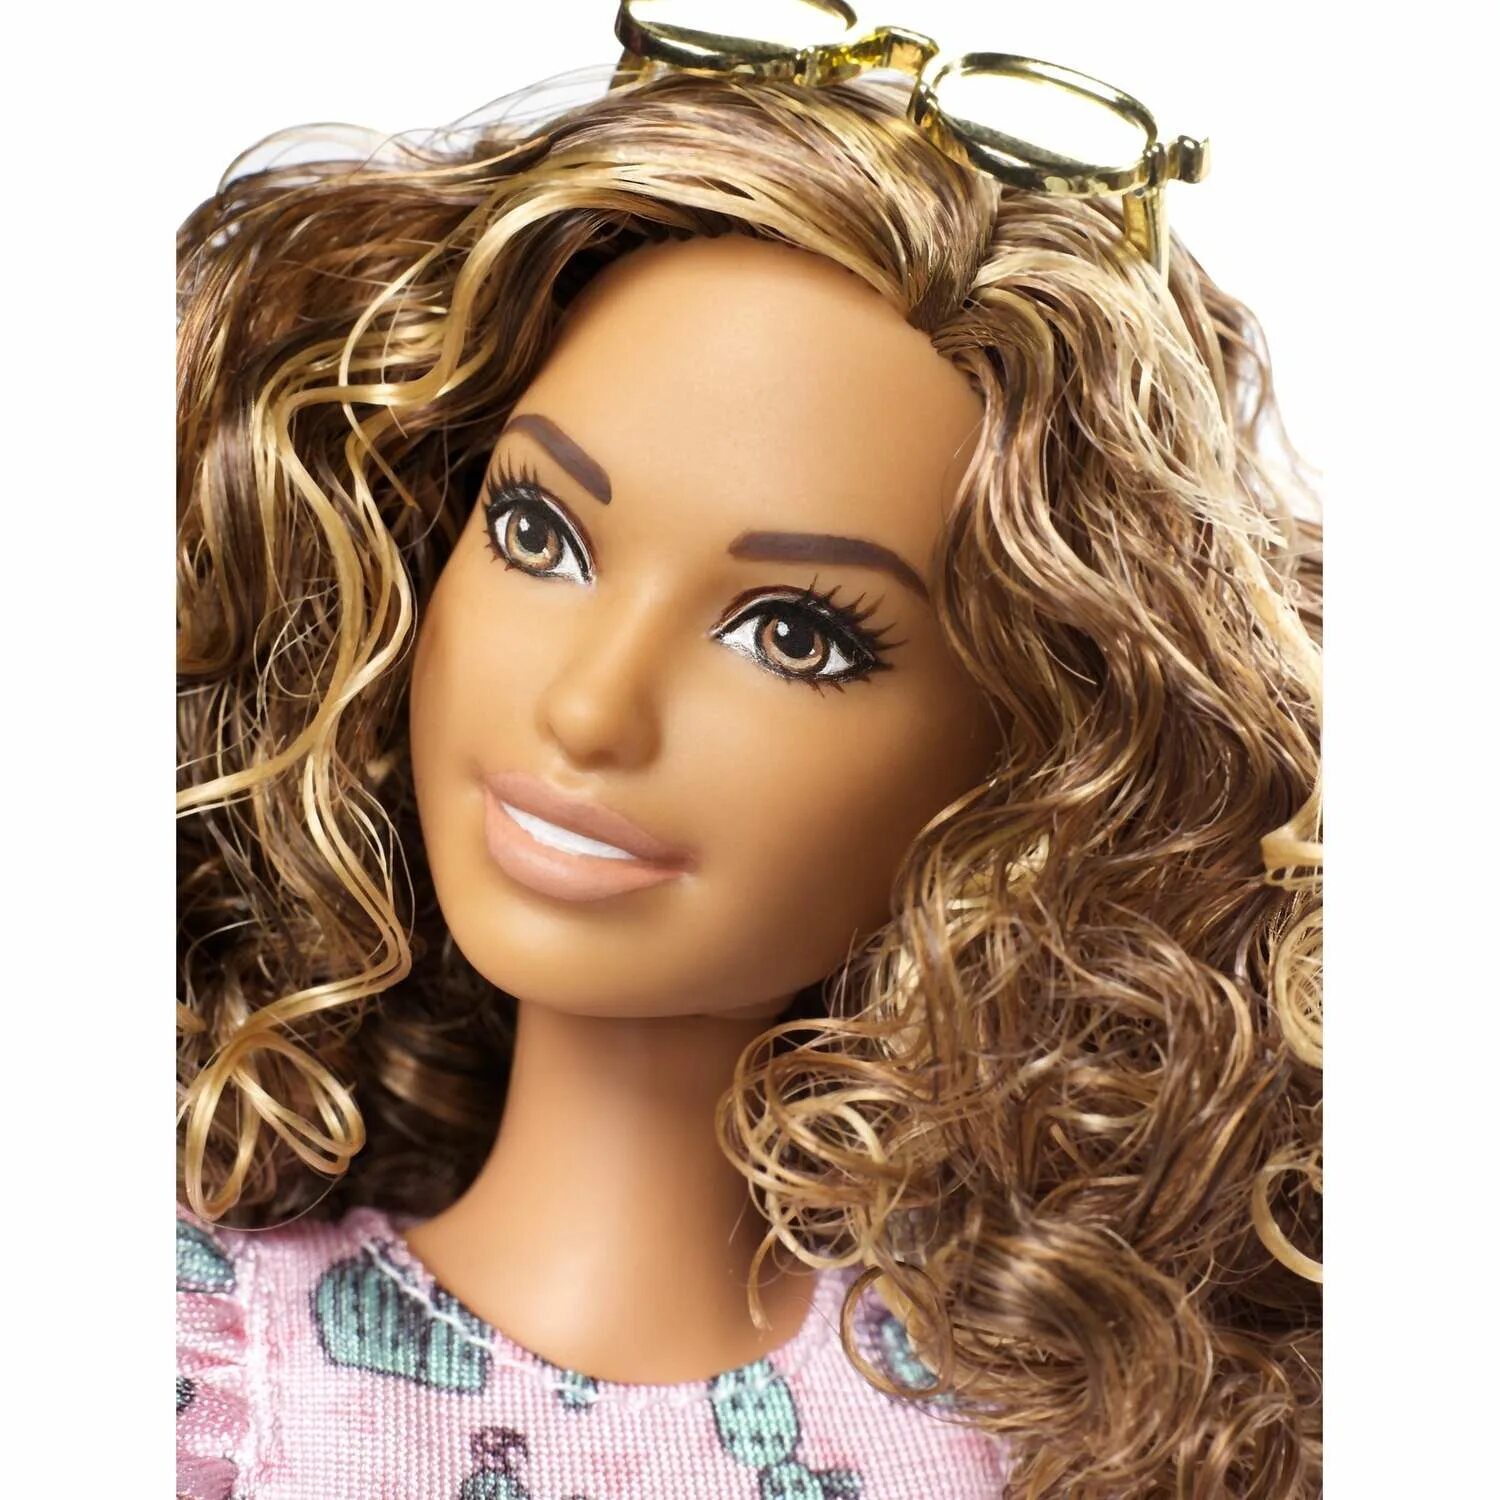 Кукла ба. Барби фашионистас 97. Барби Fashionistas 67. Кукла Barbie Fashionistas 97. Barbie Fashionistas Doll 67 Cactus cutie - dyy97 - Tall.